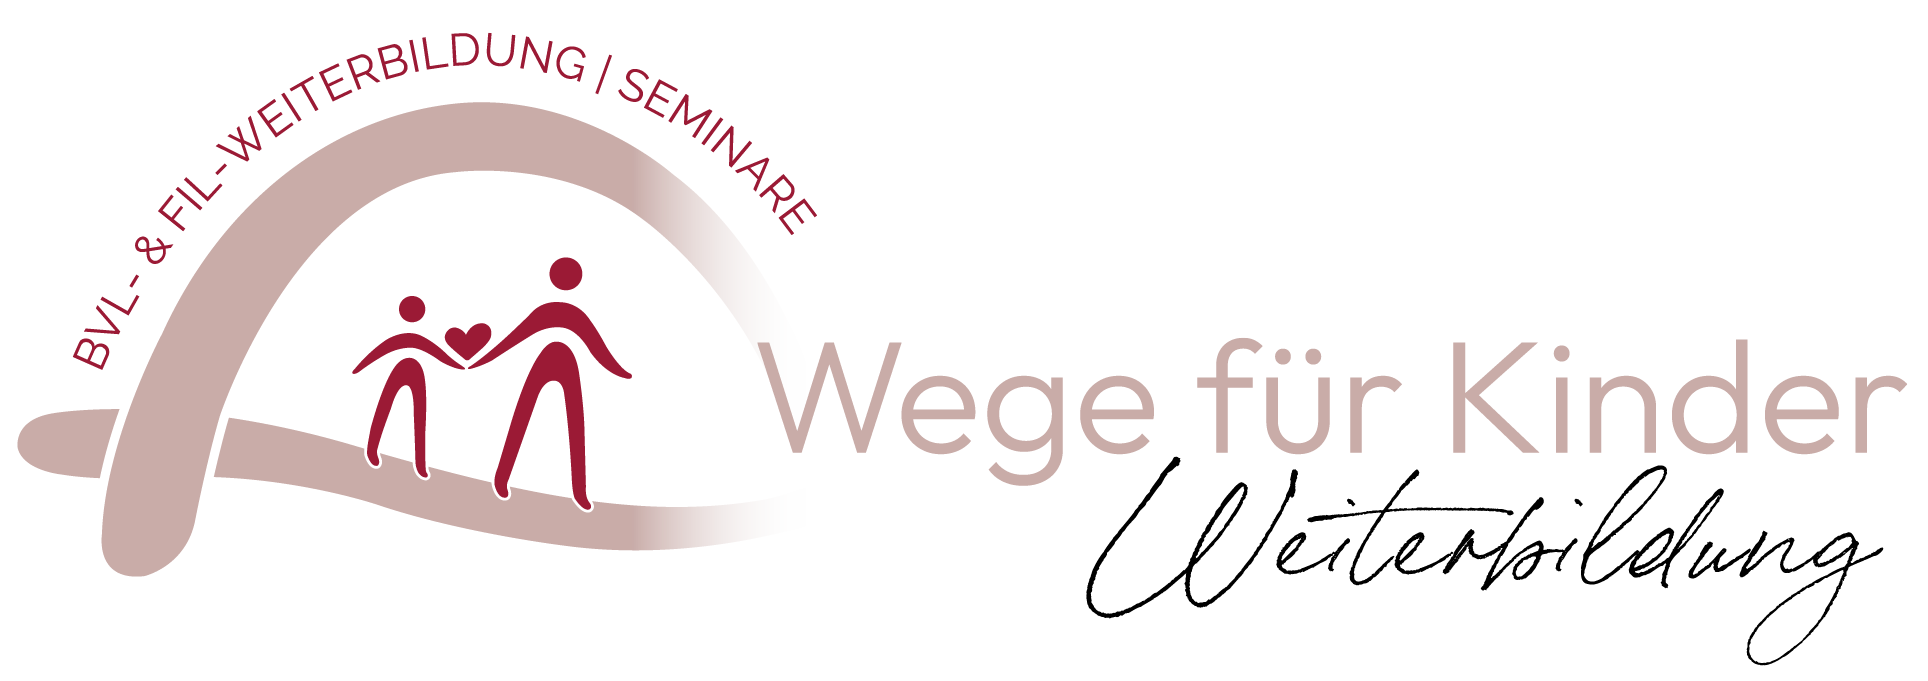 logo_wege-fuer-kinder_weiterbildung.1708605022.png